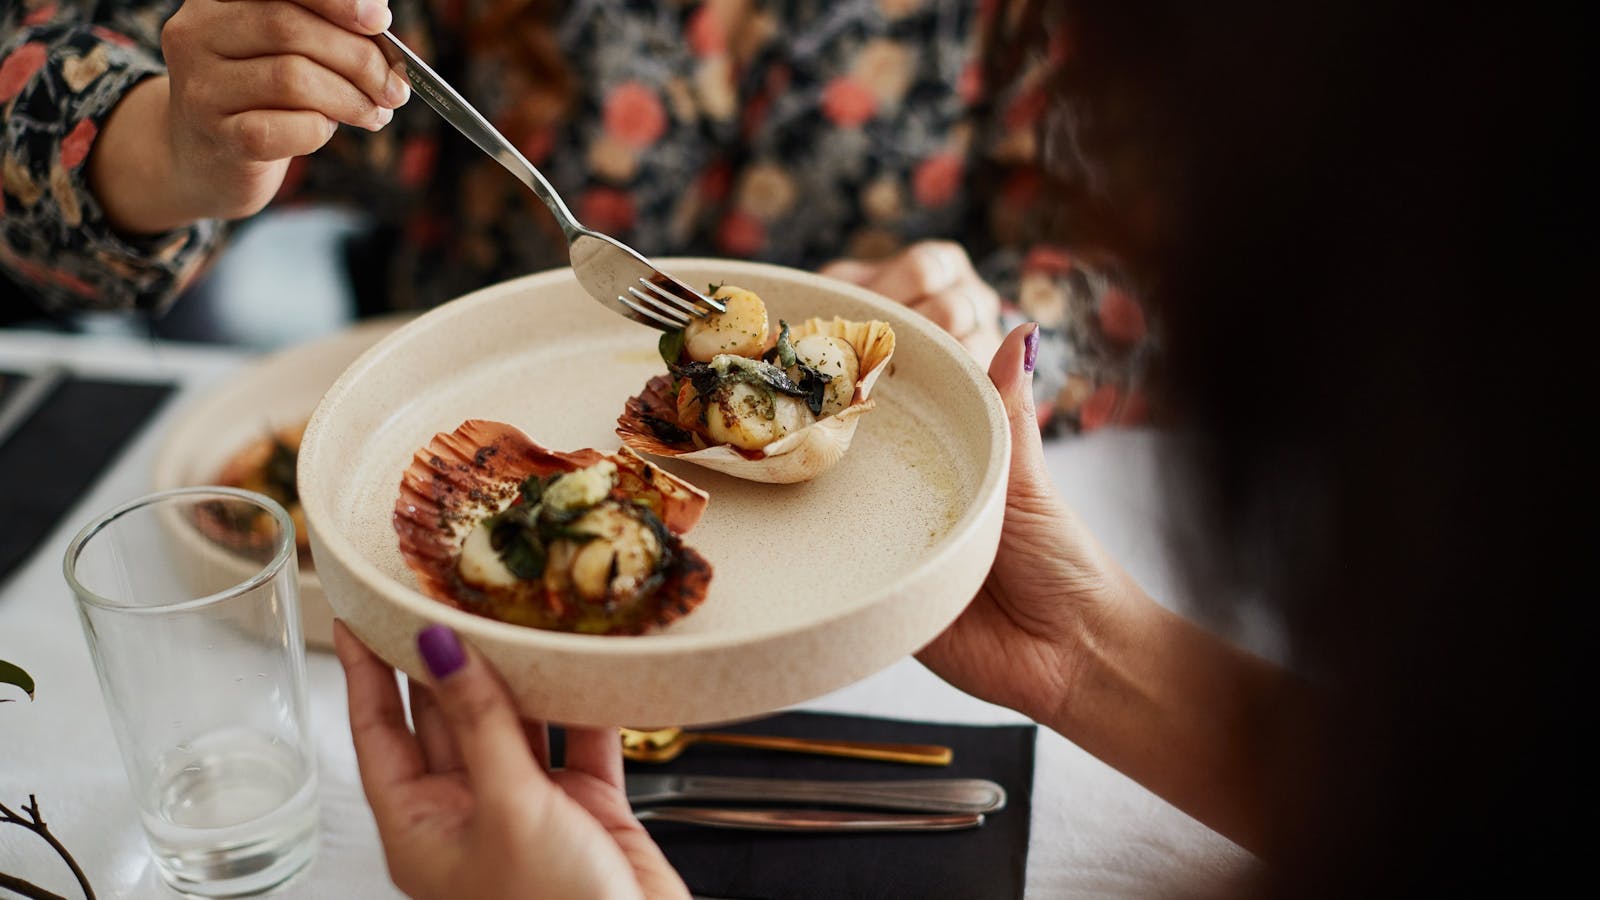 Kipli takara add on (cultural dining experience)